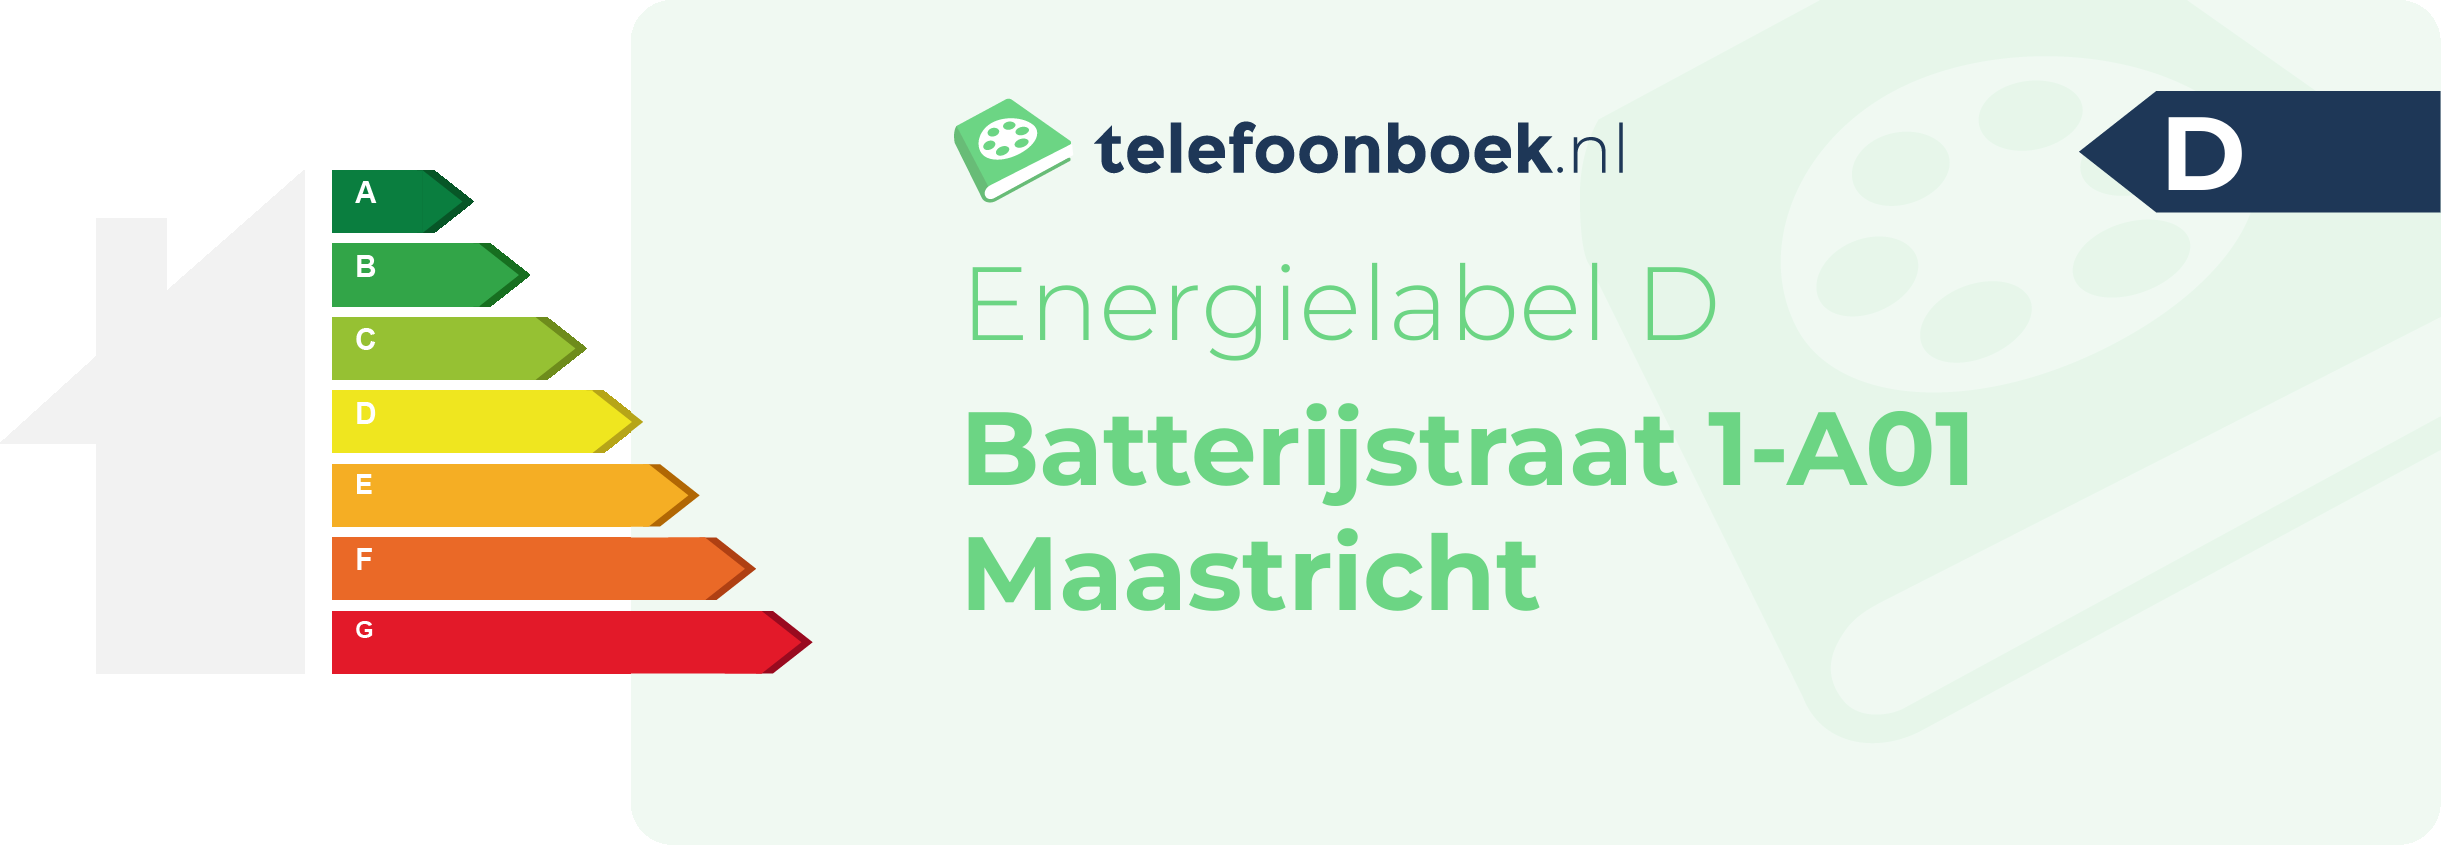 Energielabel Batterijstraat 1-A01 Maastricht